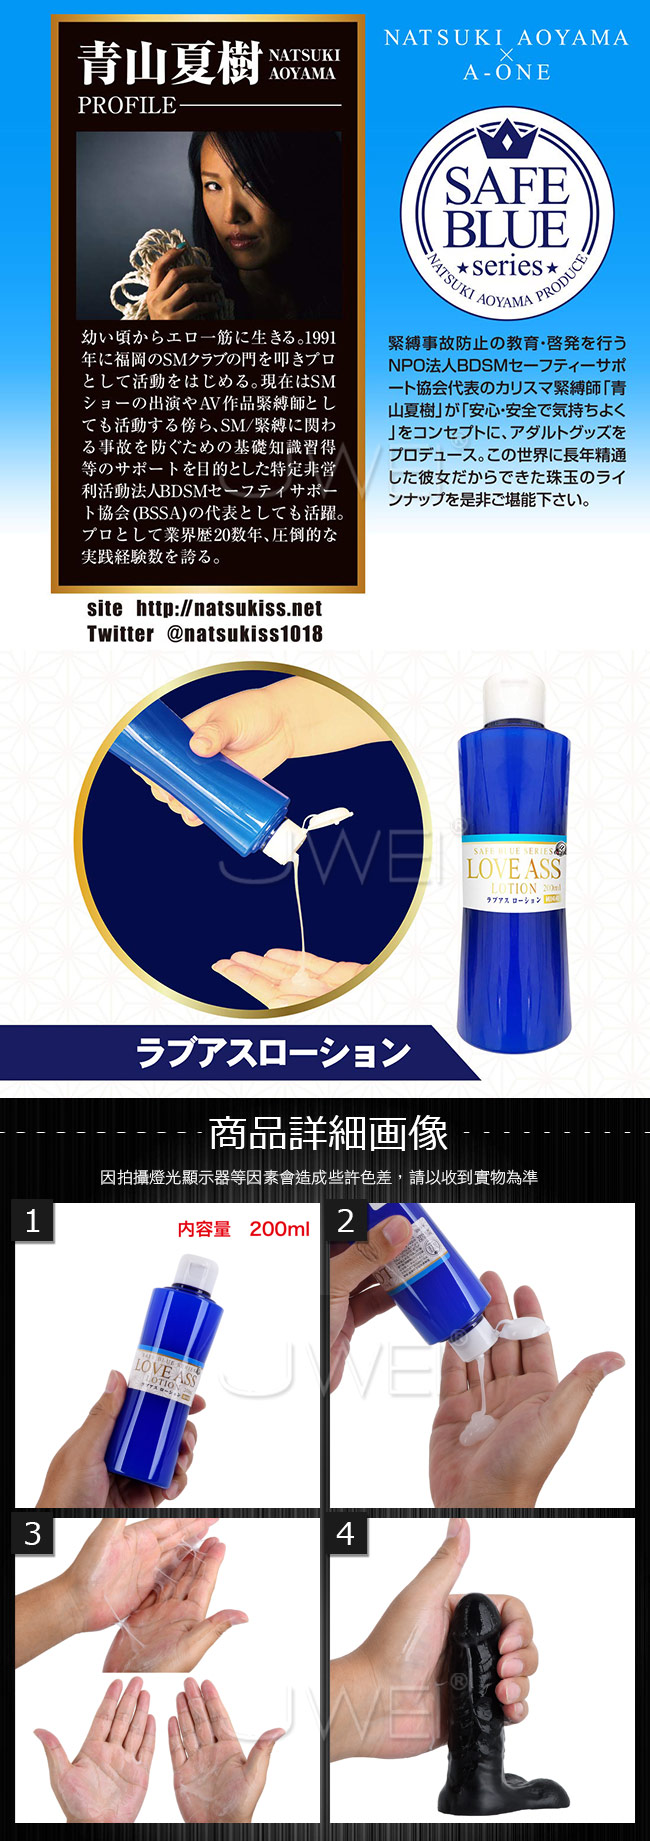 日本原裝進口A-ONE．SAFT BLUE系列 LOVE ASS 高黏度無色透明後庭潤滑液-200ml